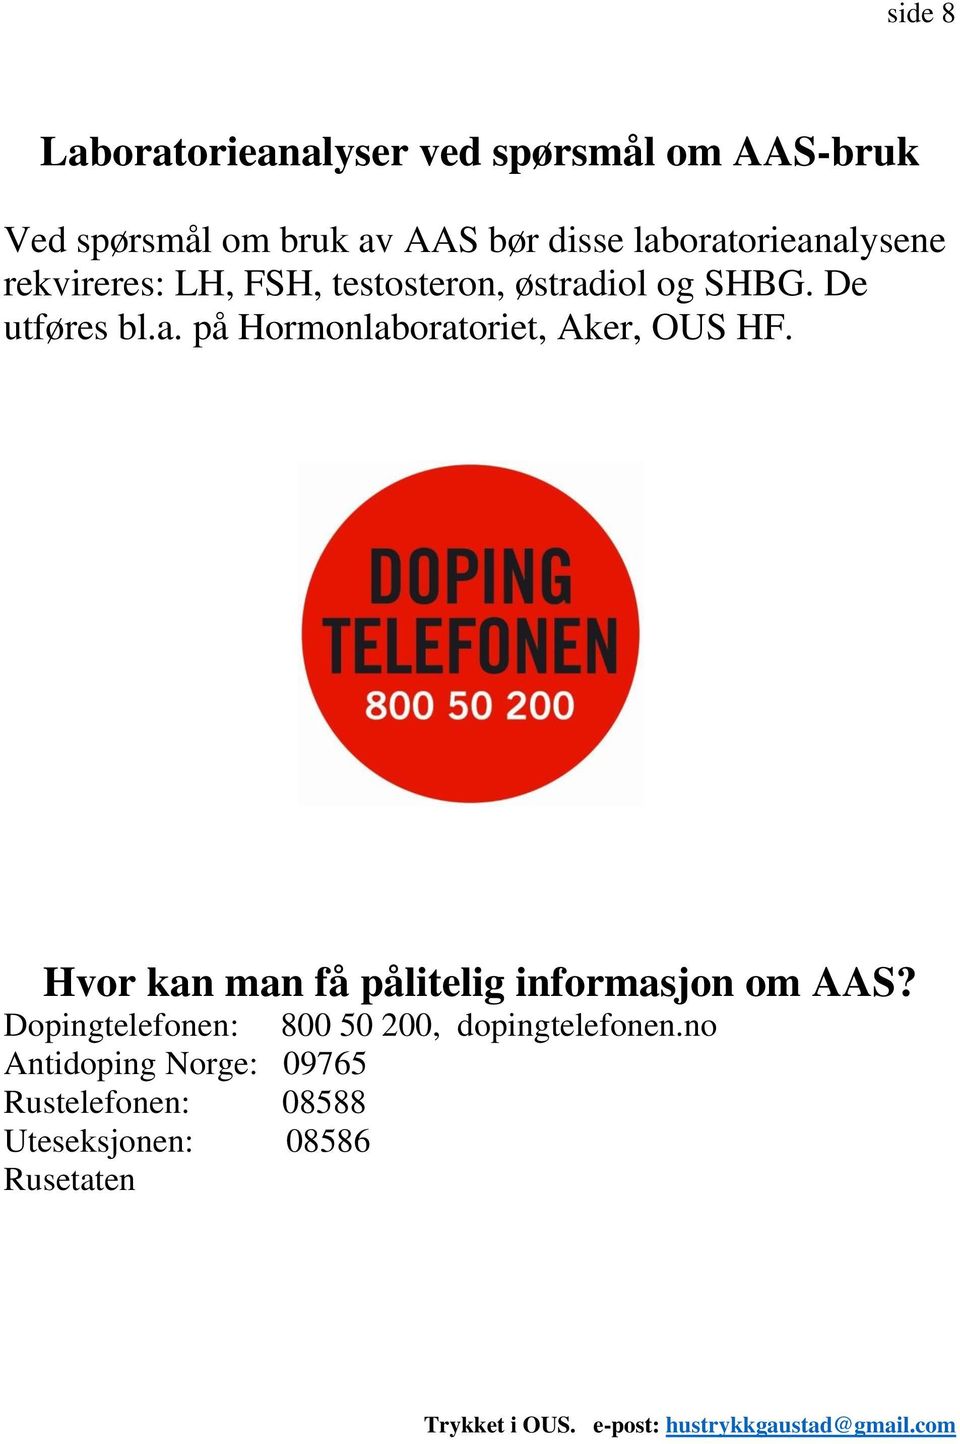 Hvor kan man få pålitelig informasjon om AAS? Dopingtelefonen: 800 50 200, dopingtelefonen.